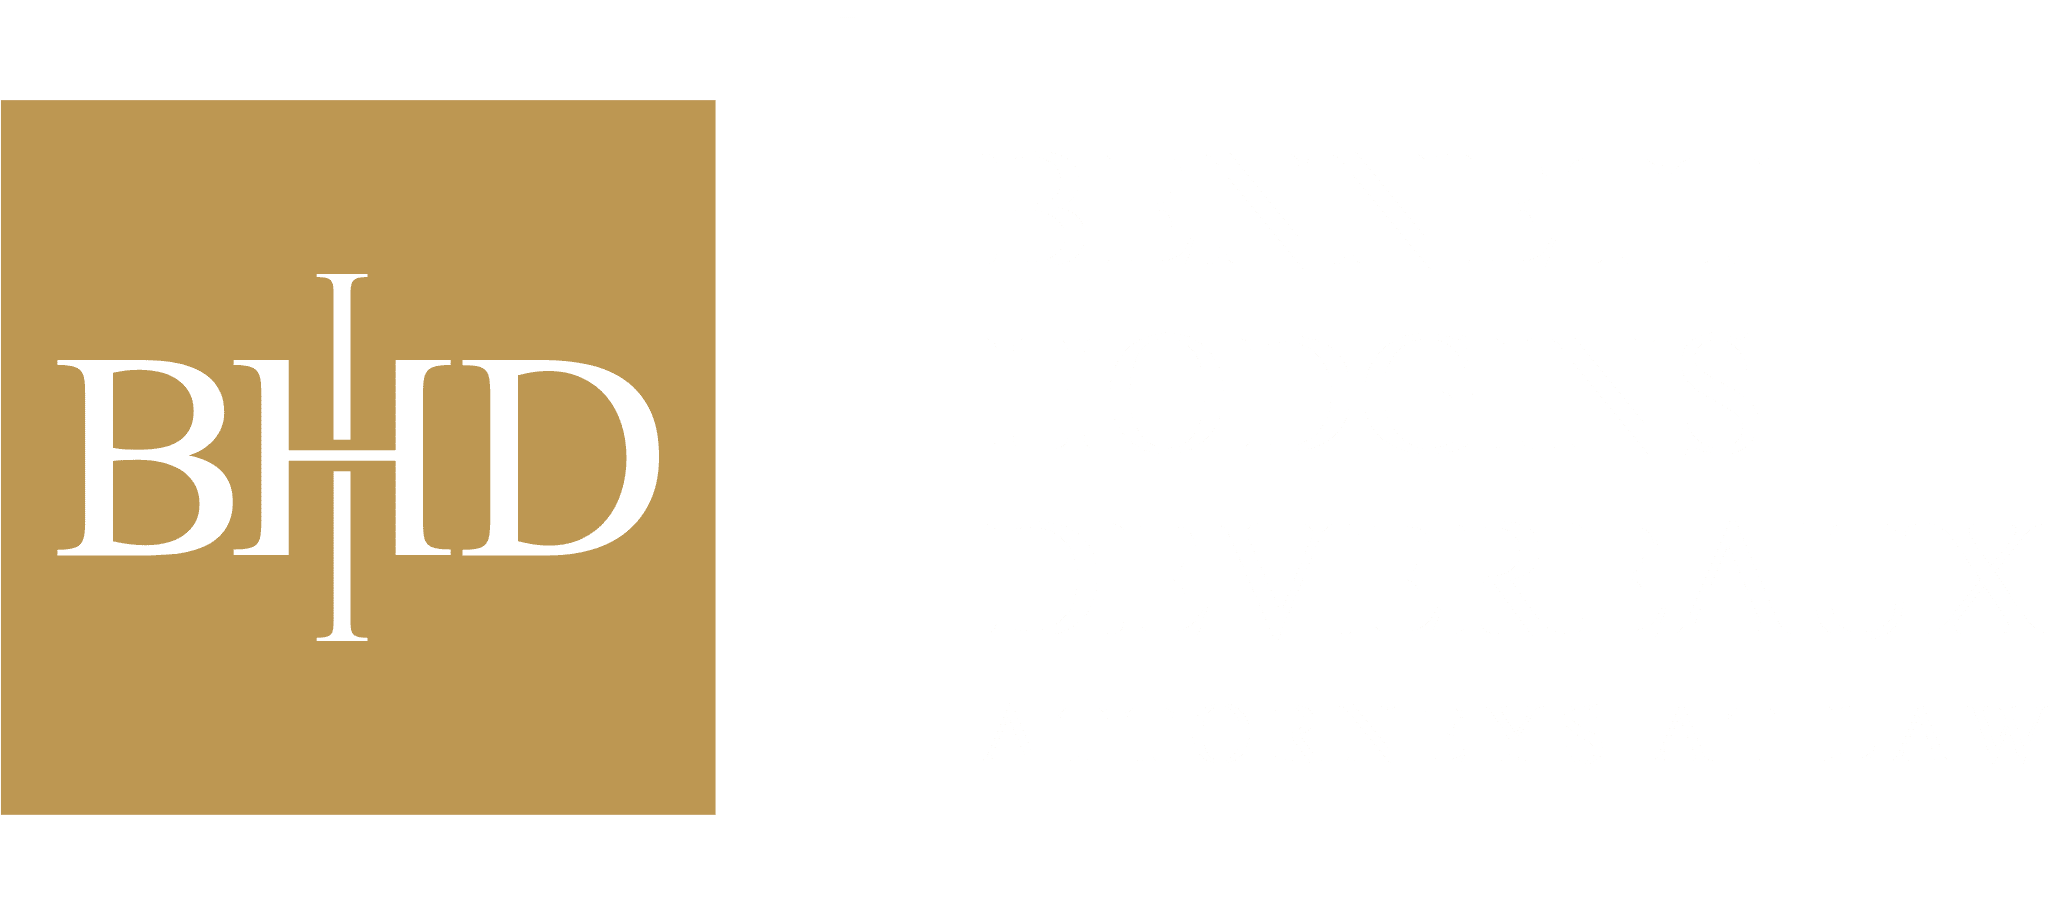 BHD Bennett Hodgins Devereaux Attorneys At Law